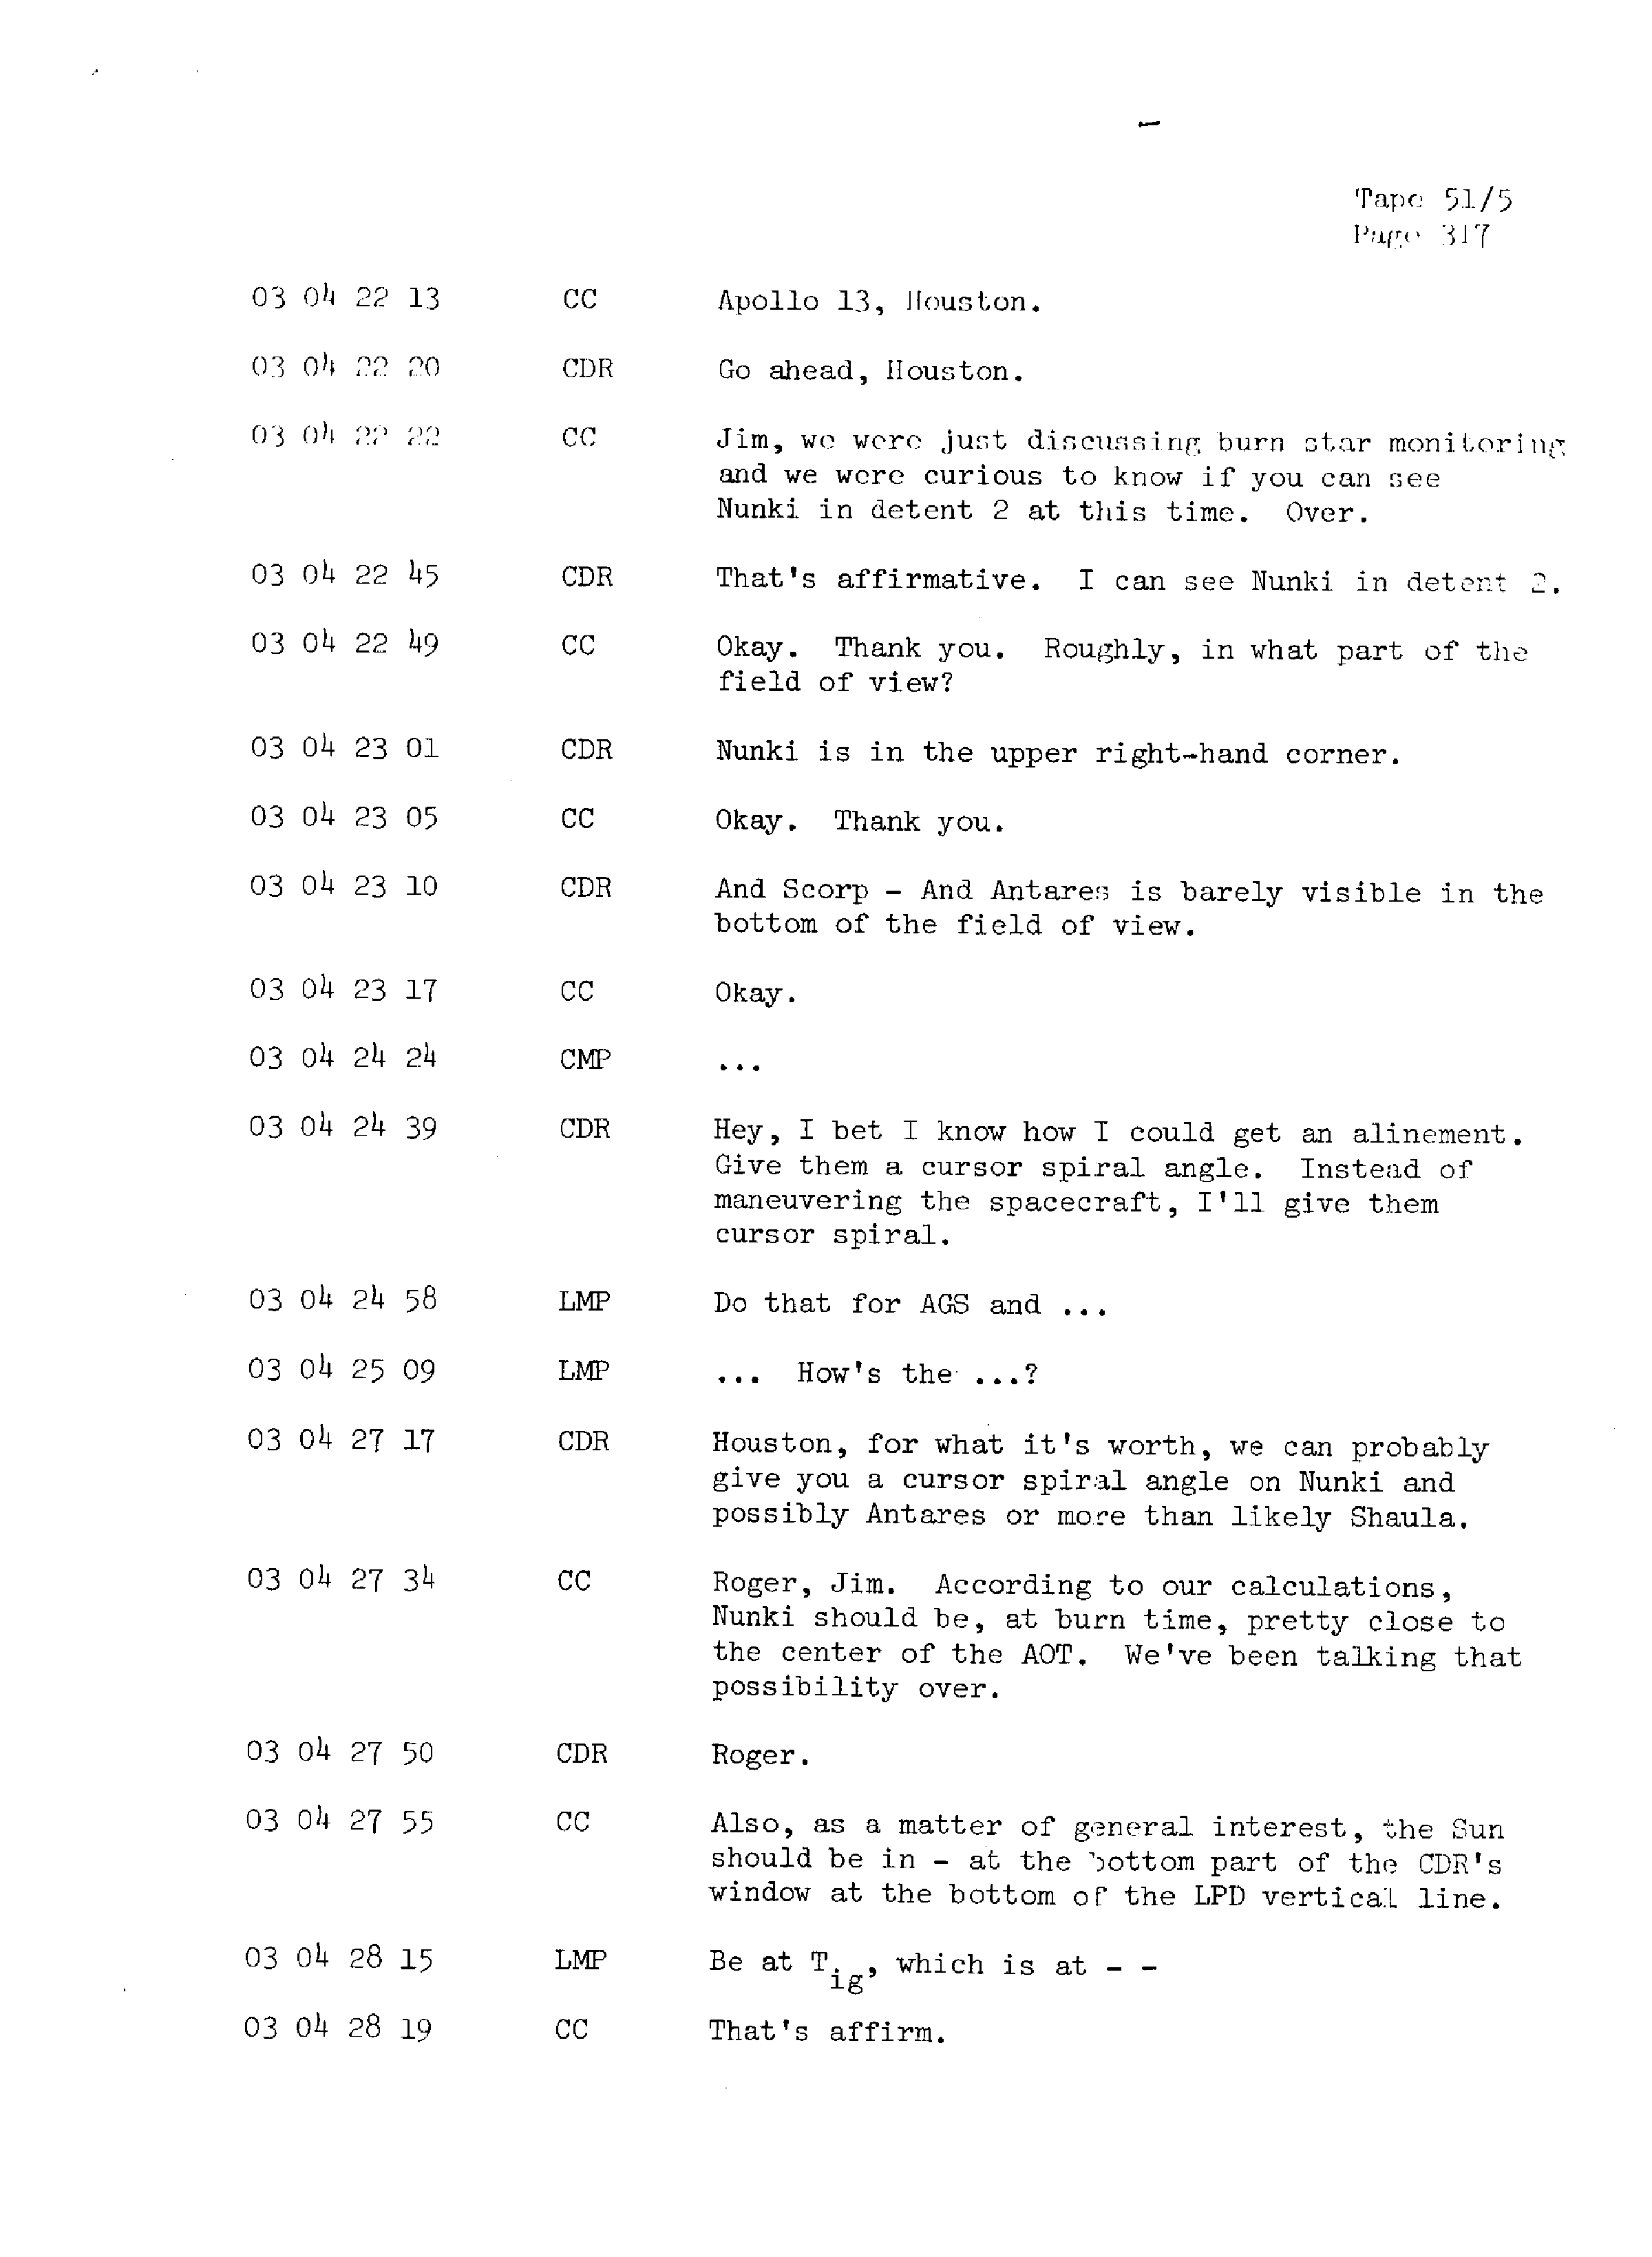 Page 324 of Apollo 13’s original transcript